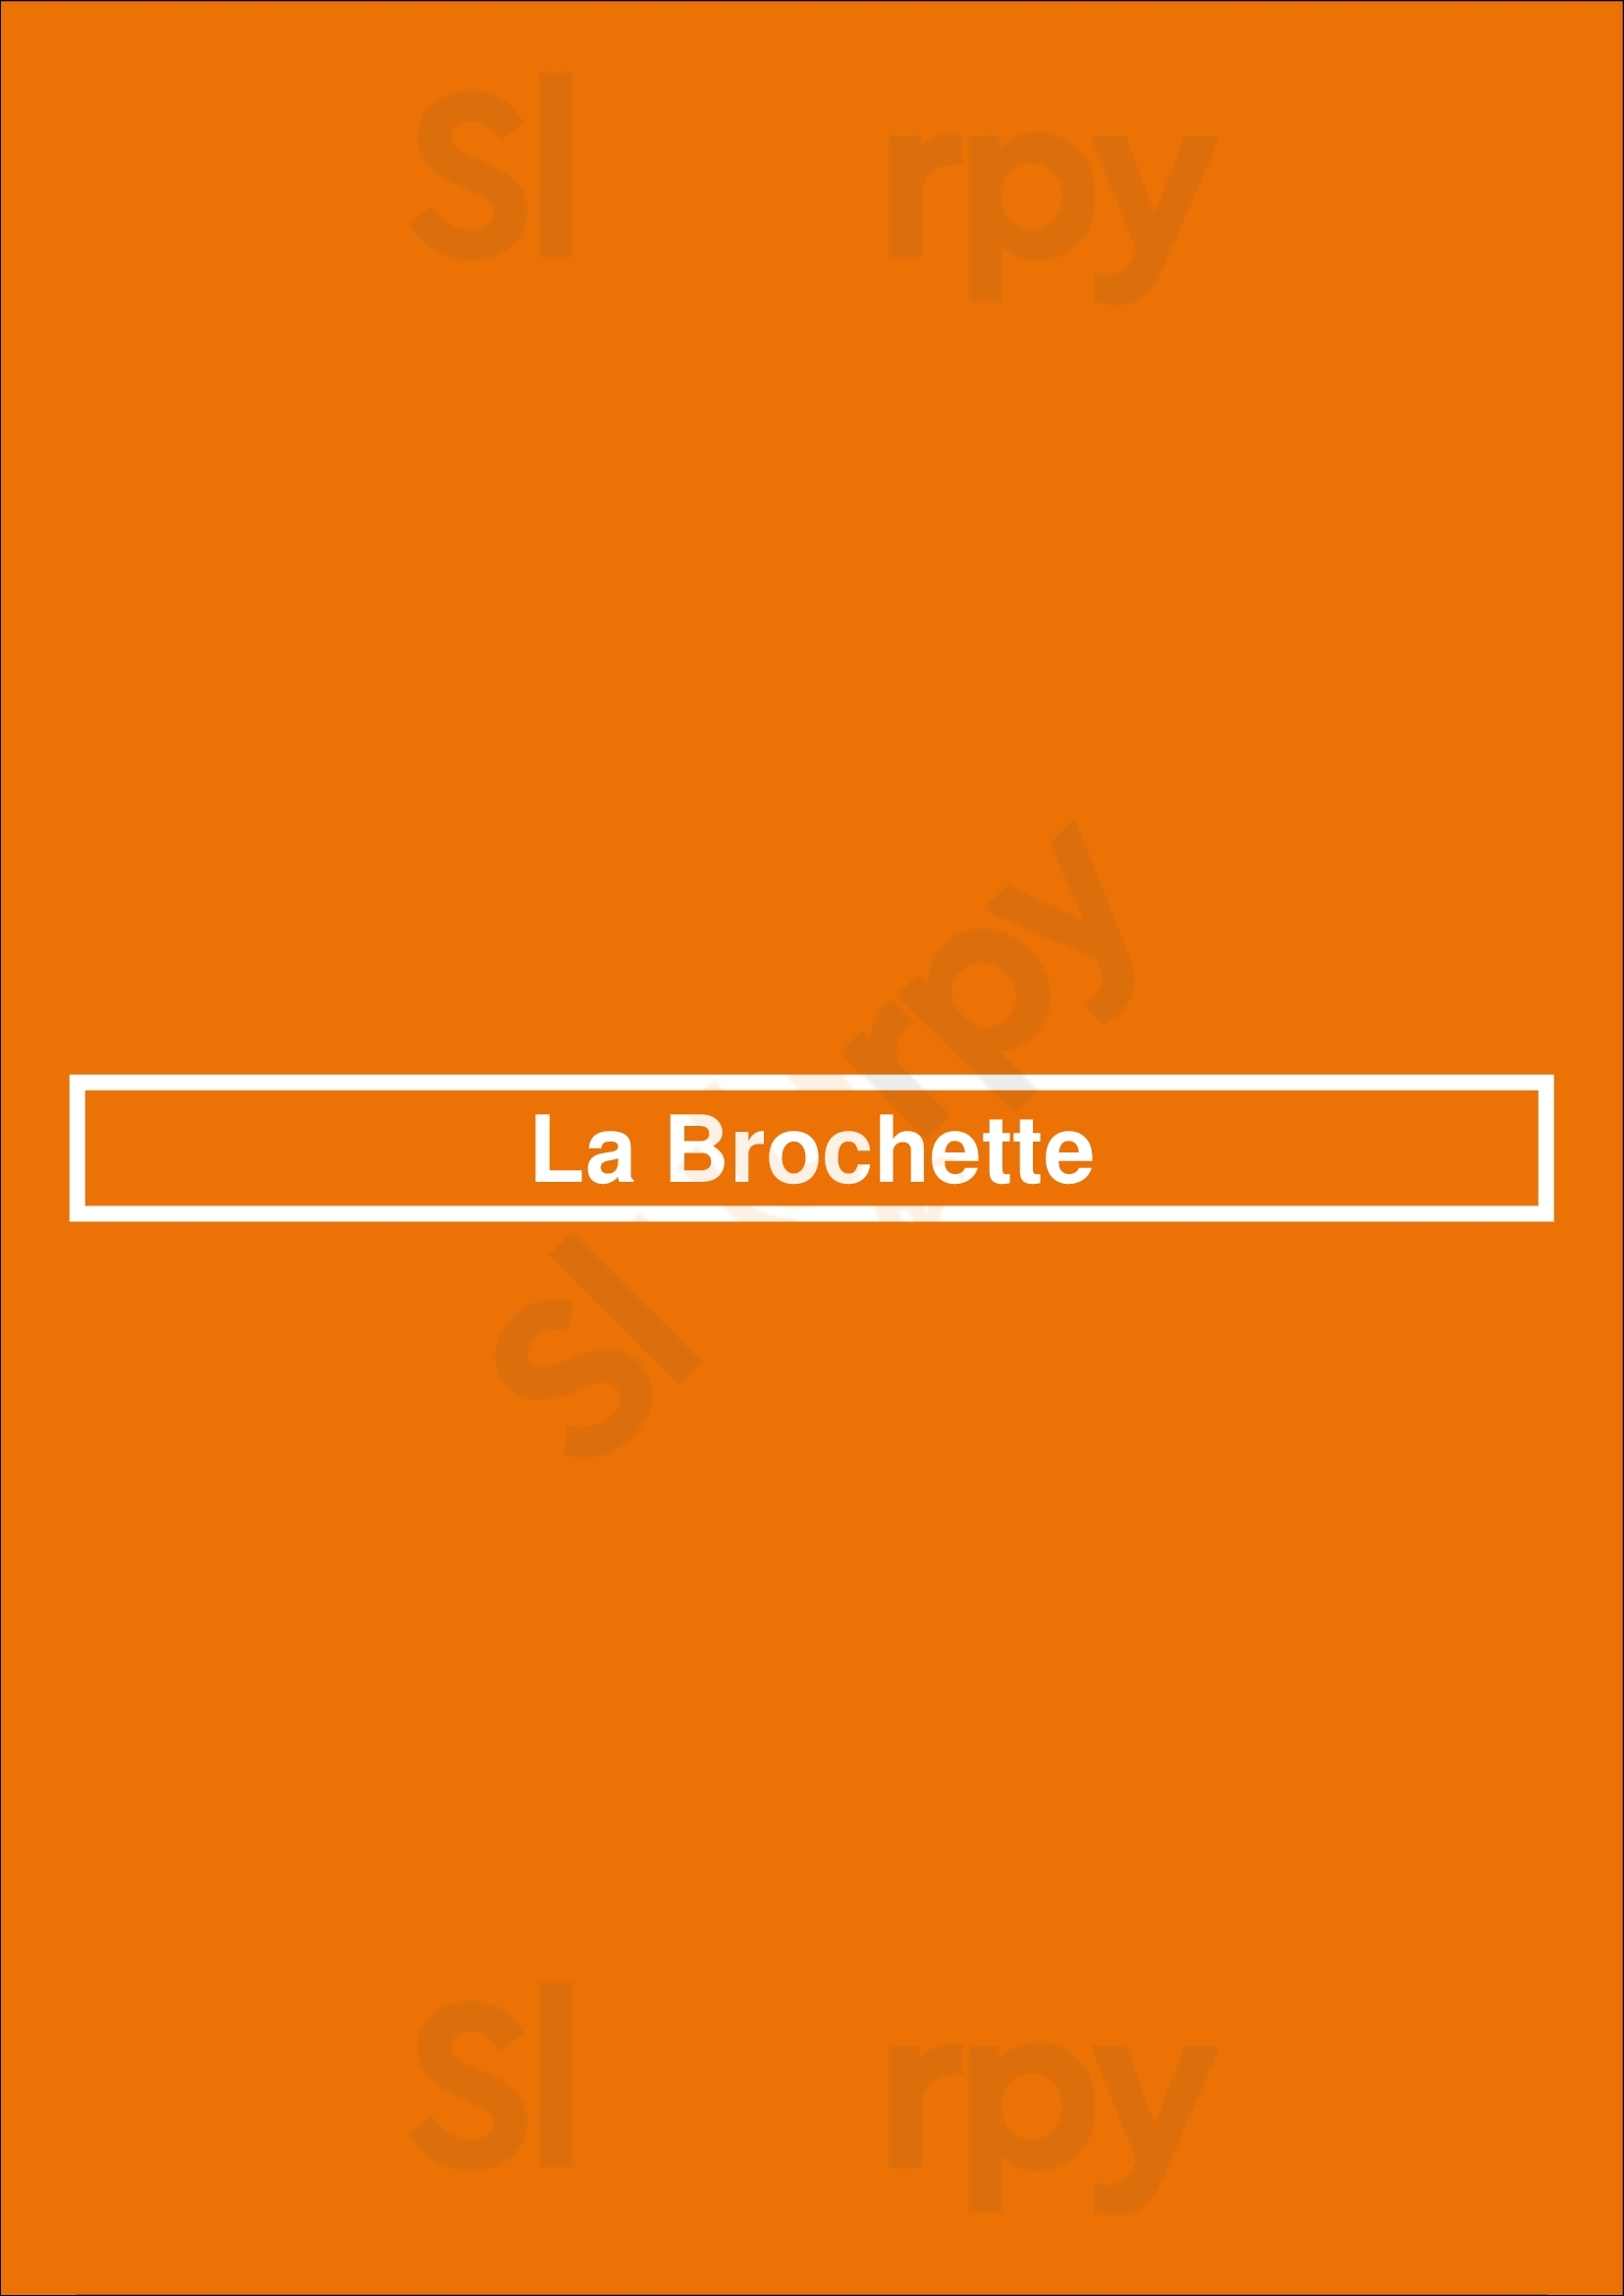 La Brochette Amsterdam Menu - 1